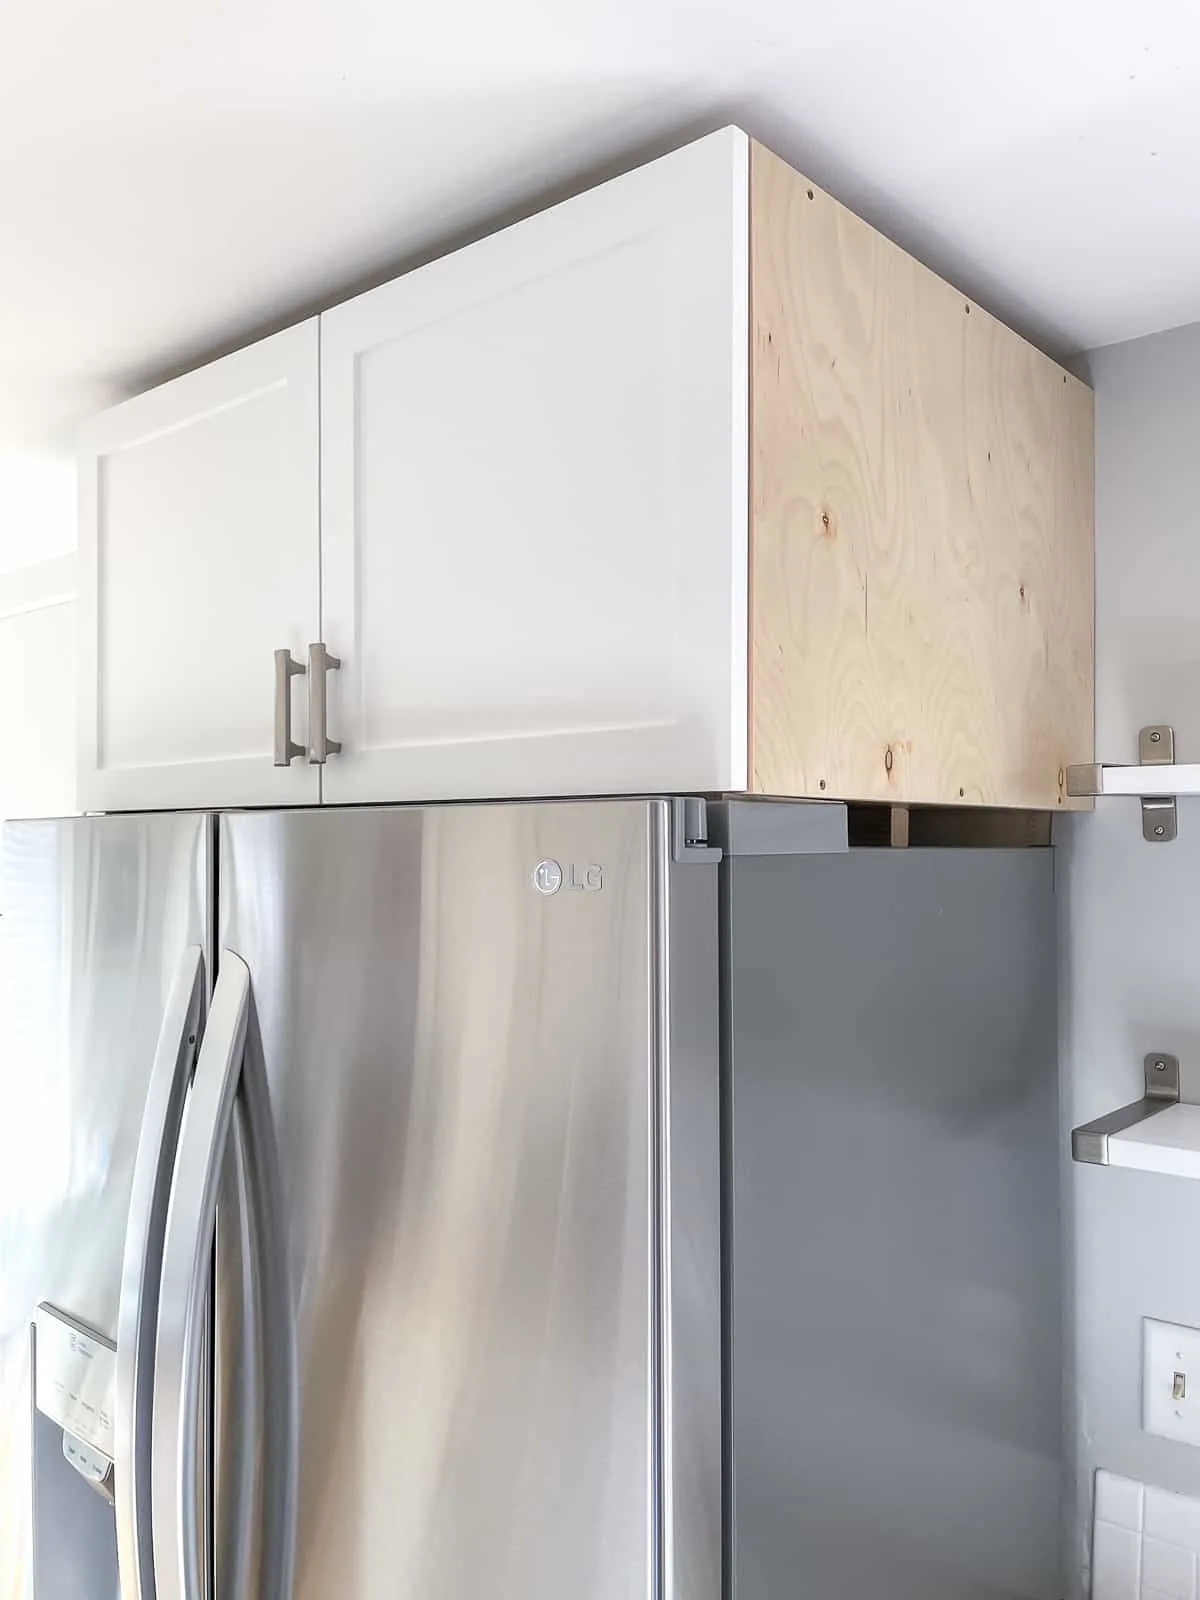 Fridge Surround - Kitchen Cabinet Ideas